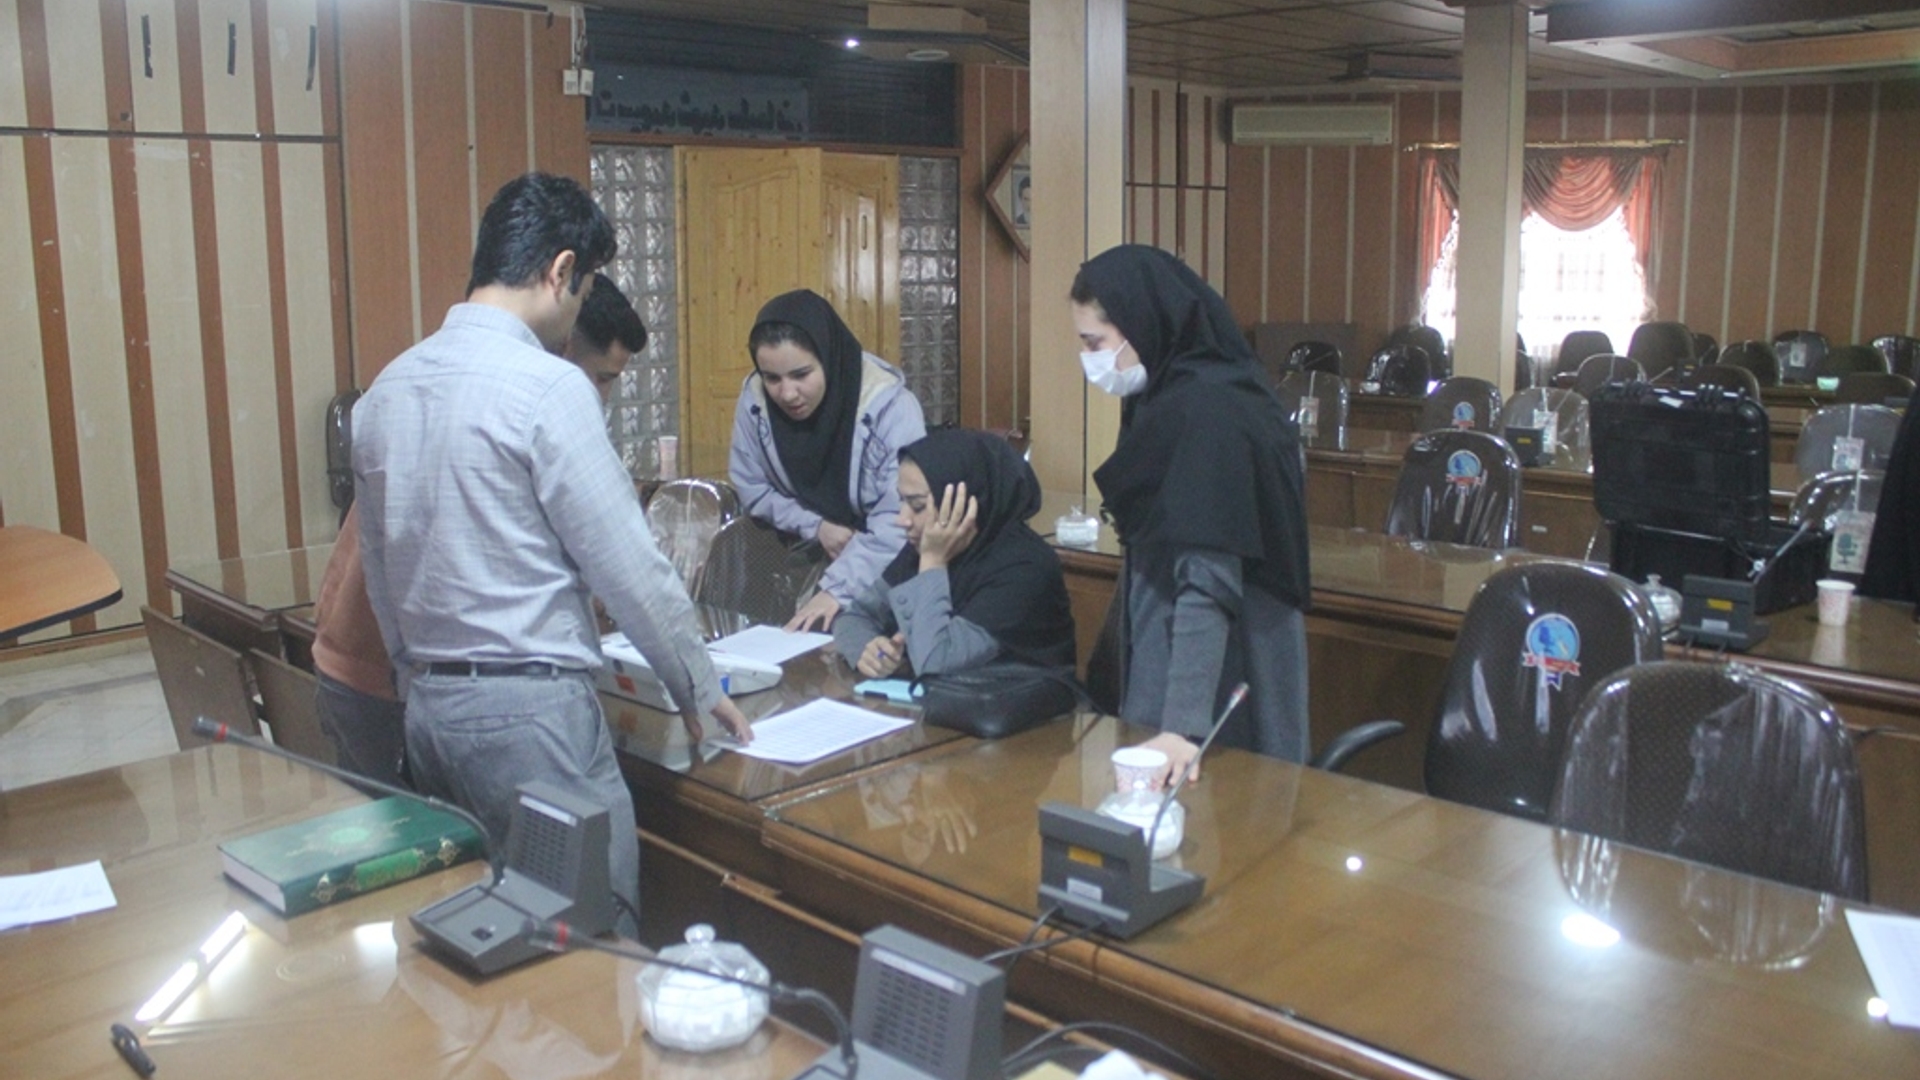 دومین جلسه آموزش تخصصی کاربران رایانه انتخابات شهرستان خمین برگزار شد